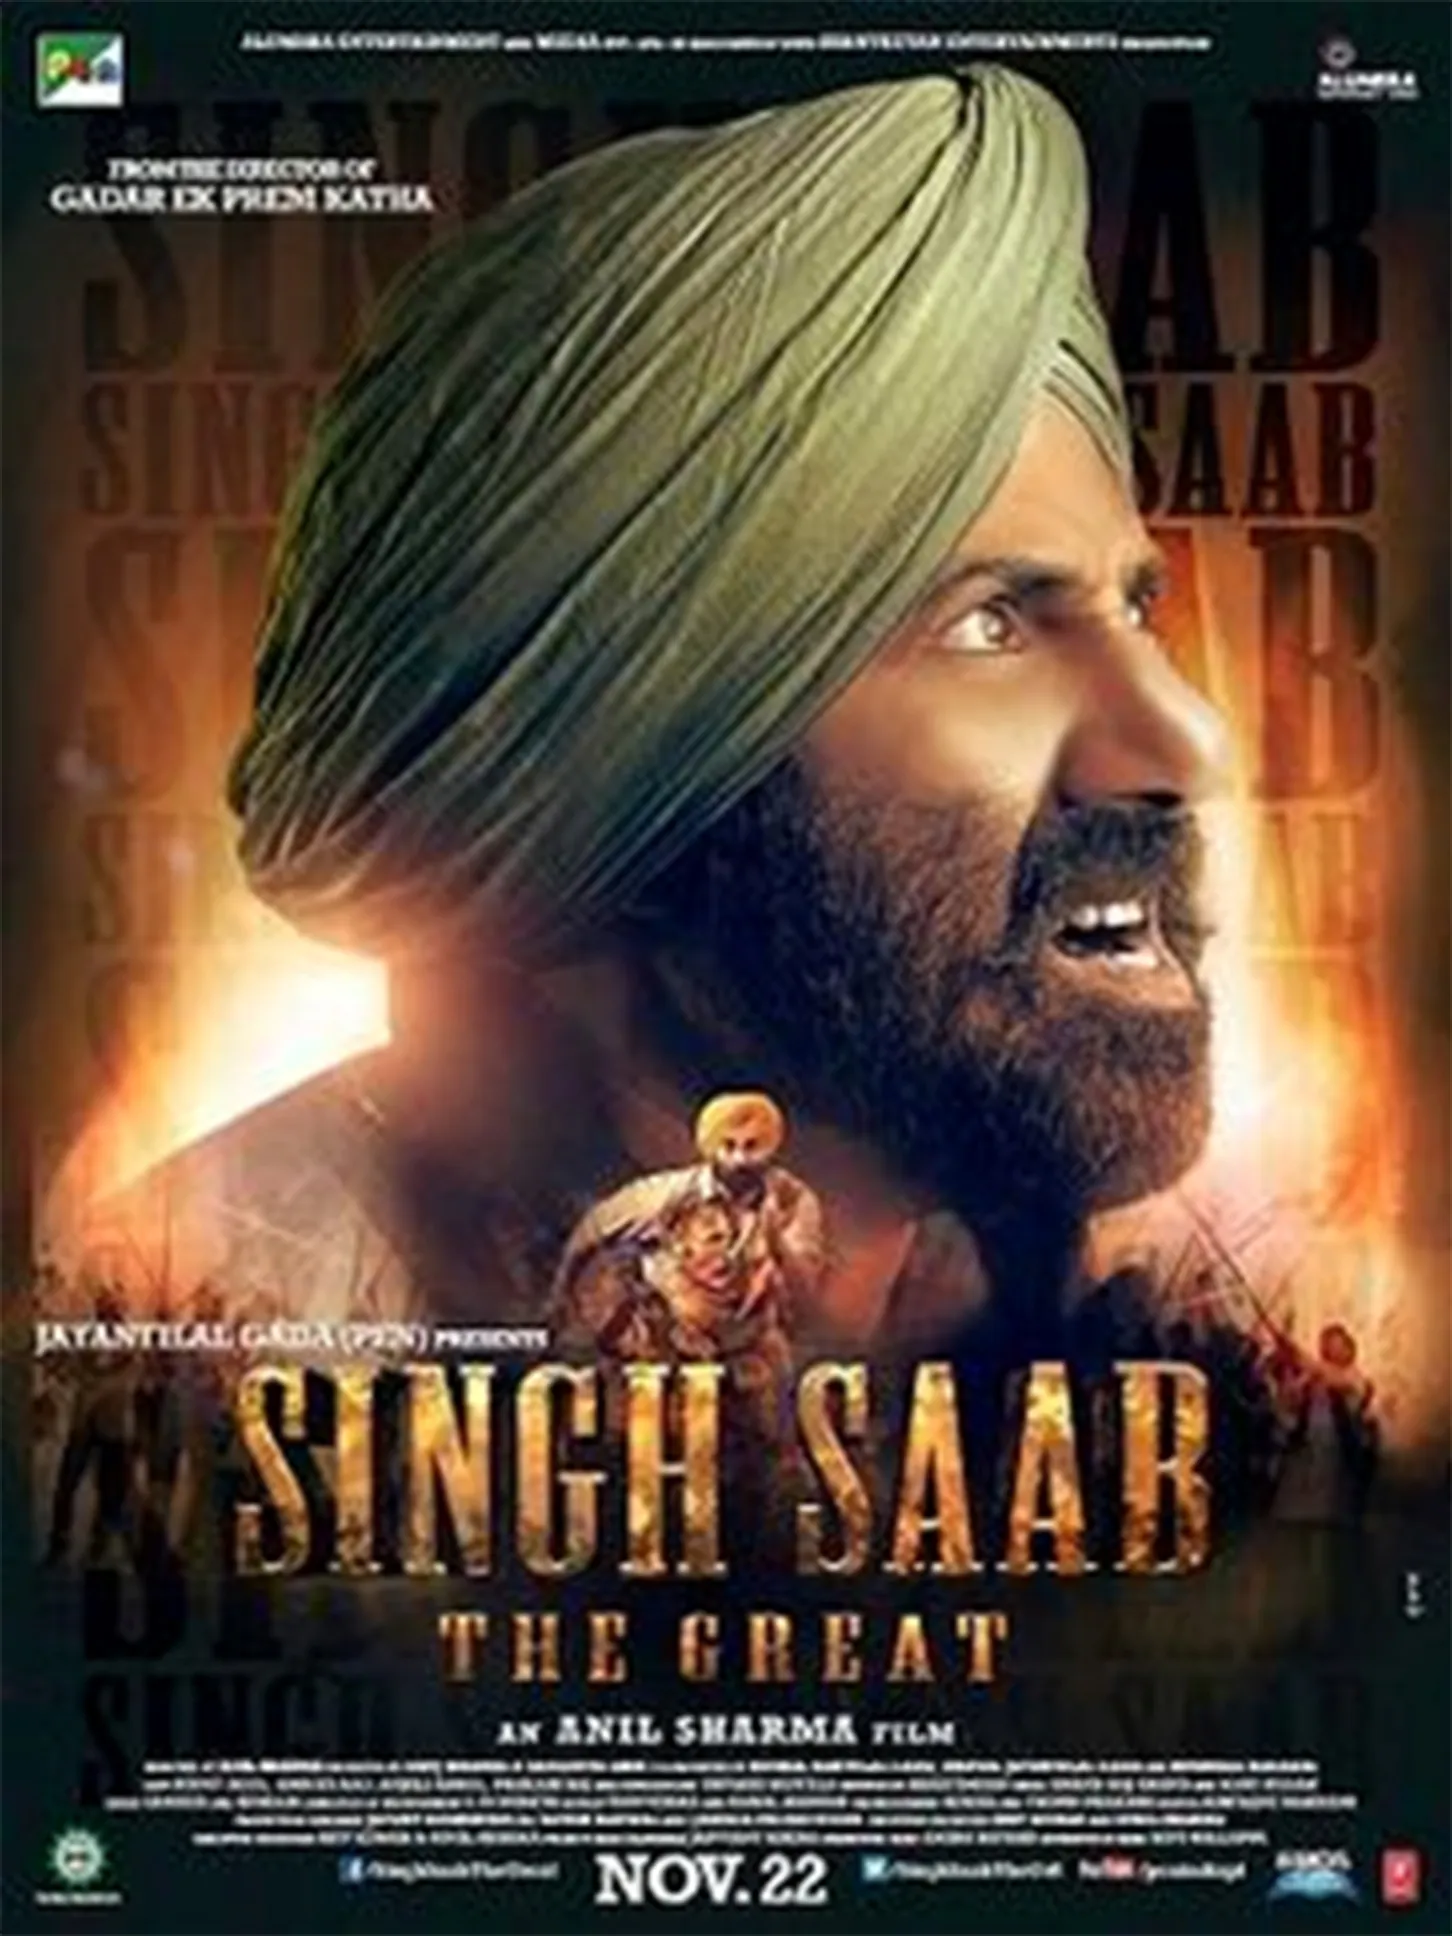 Singh Saab the Greate